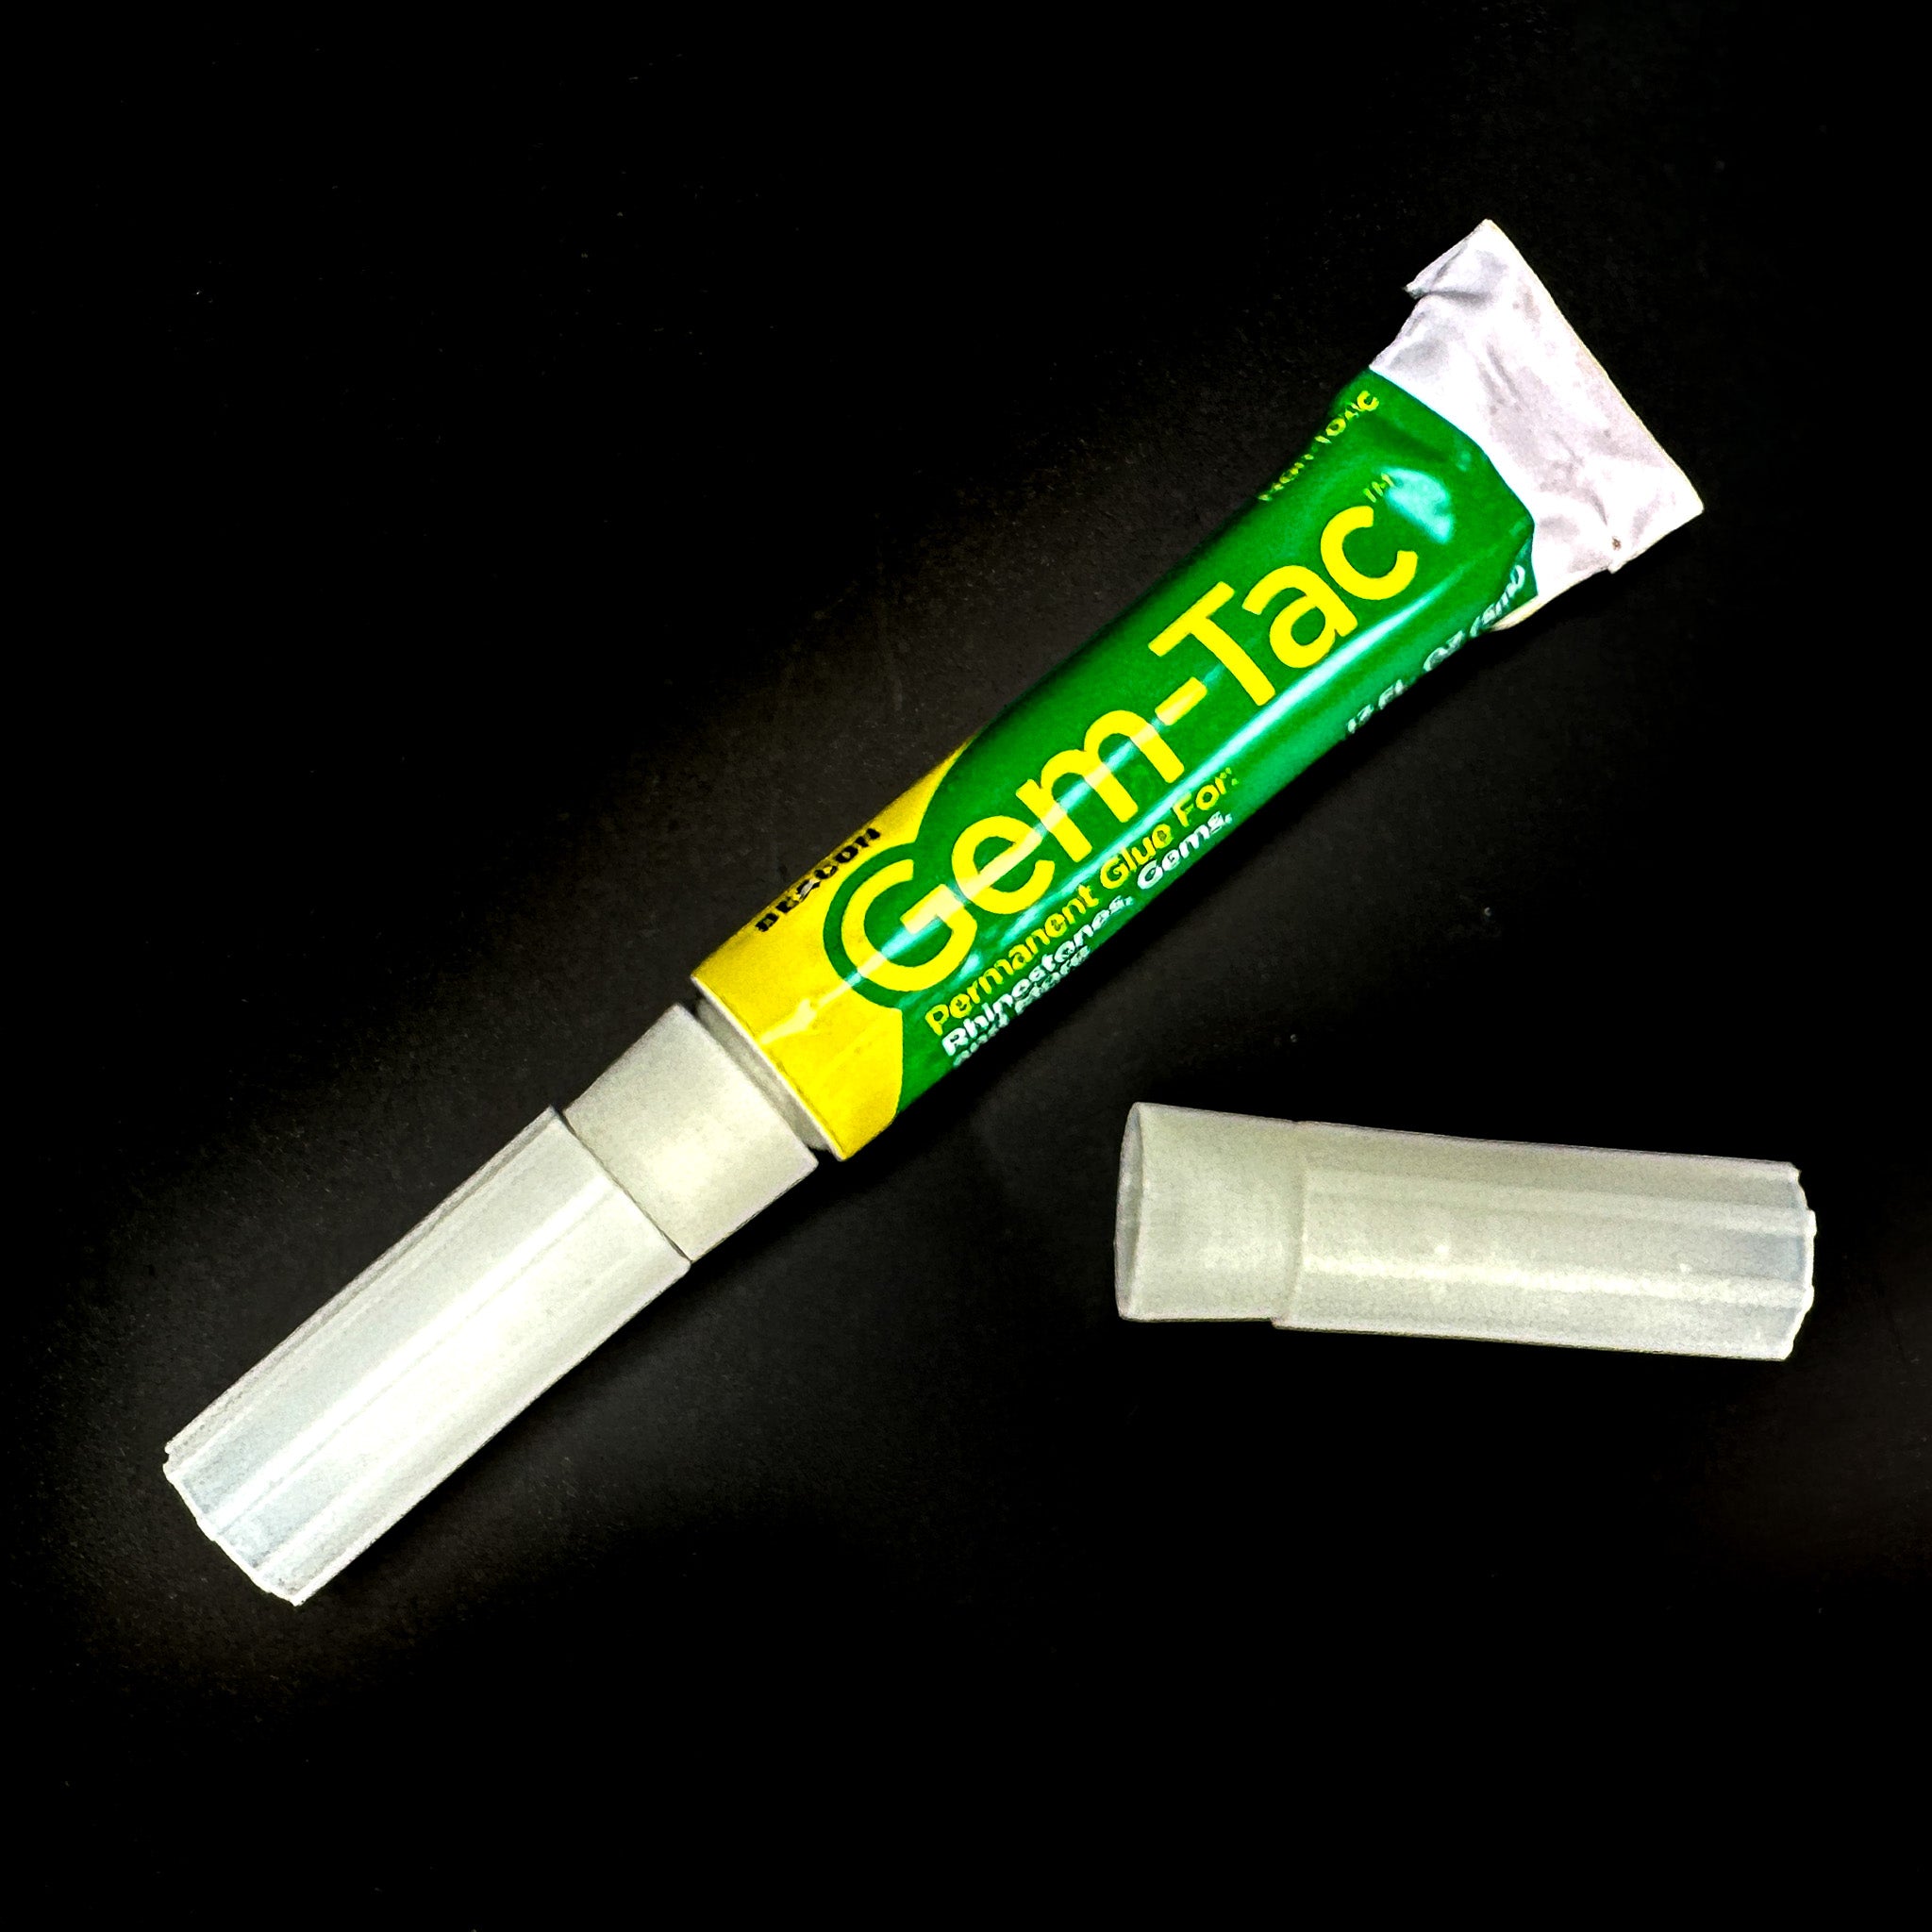 Gem-Tac Adhesive Gem Crystal Glue